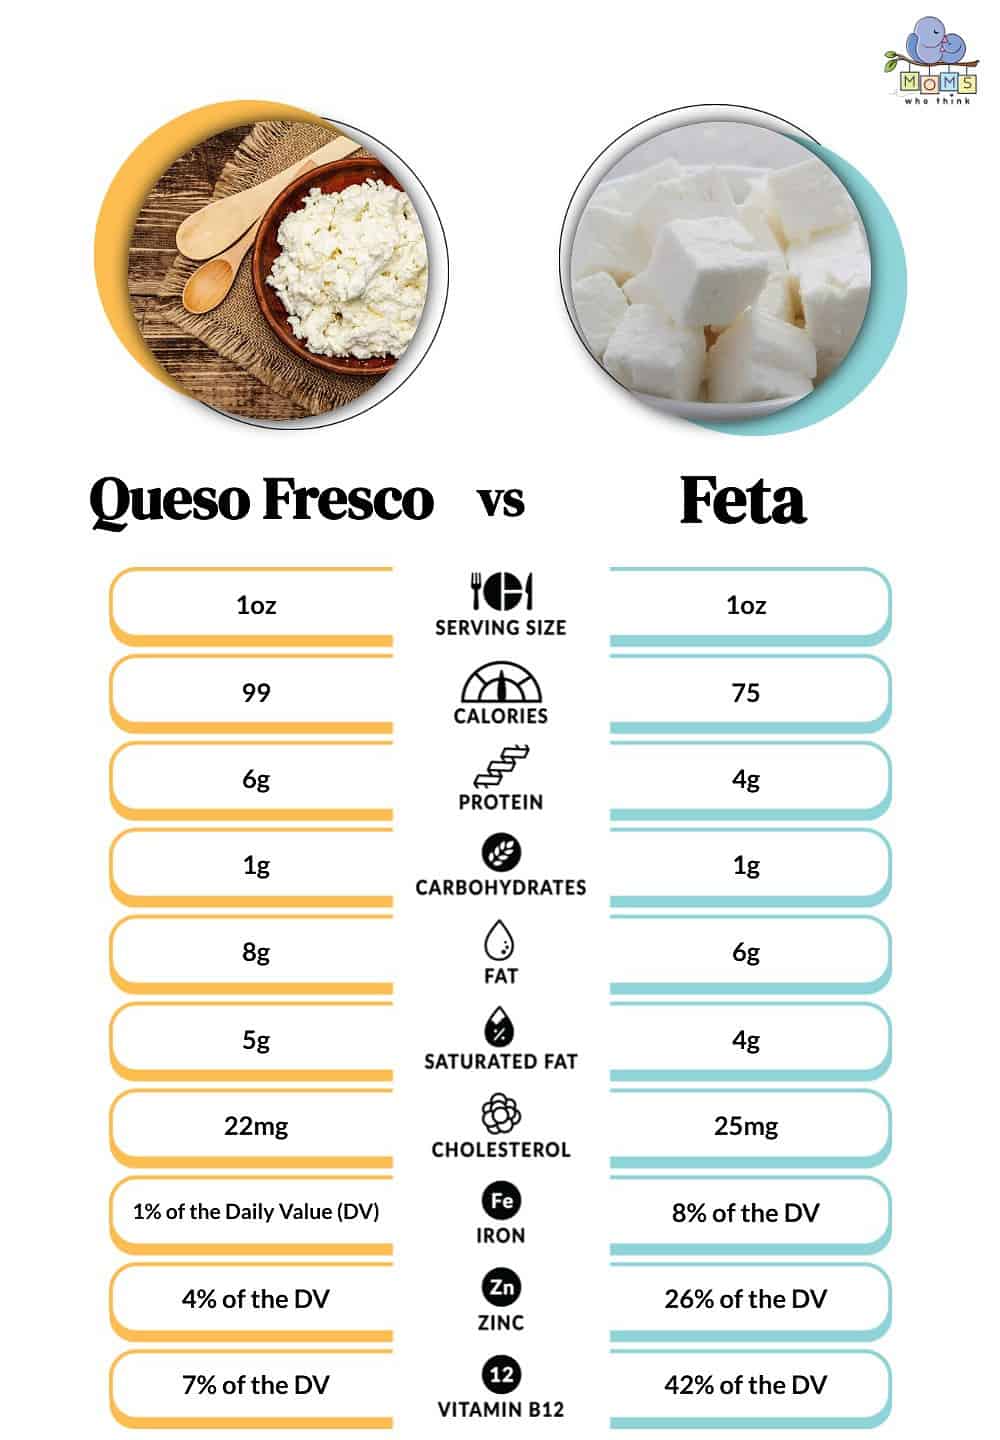 Queso Fresco vs Feta Nutrition Comparison